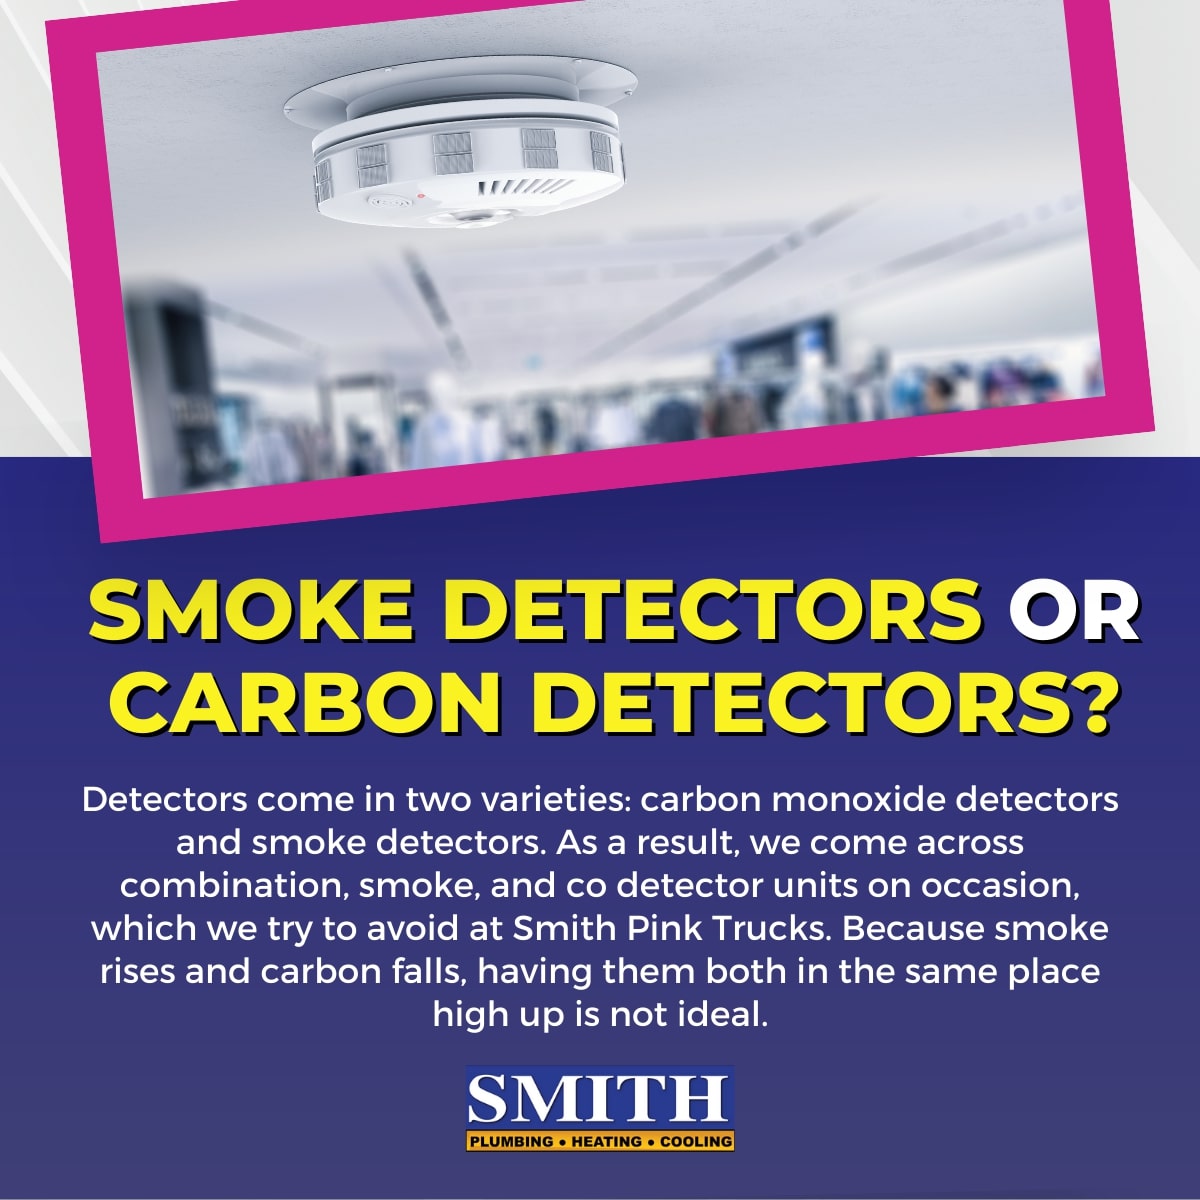 Smoke detectors or carbon detectors?